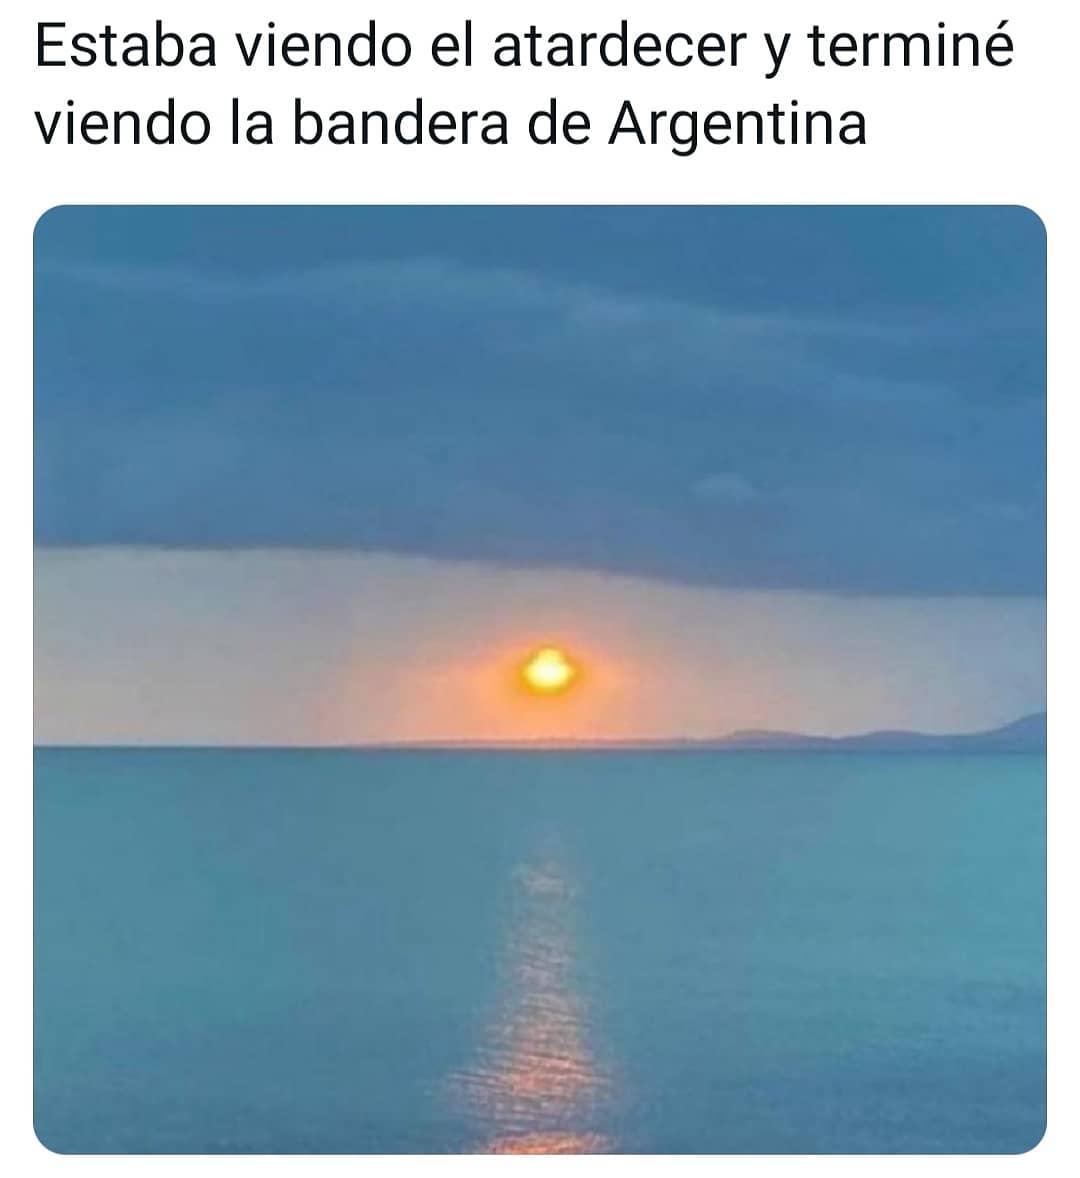 Estaba viendo el atardecer y terminé viendo la bandera de Argentina.